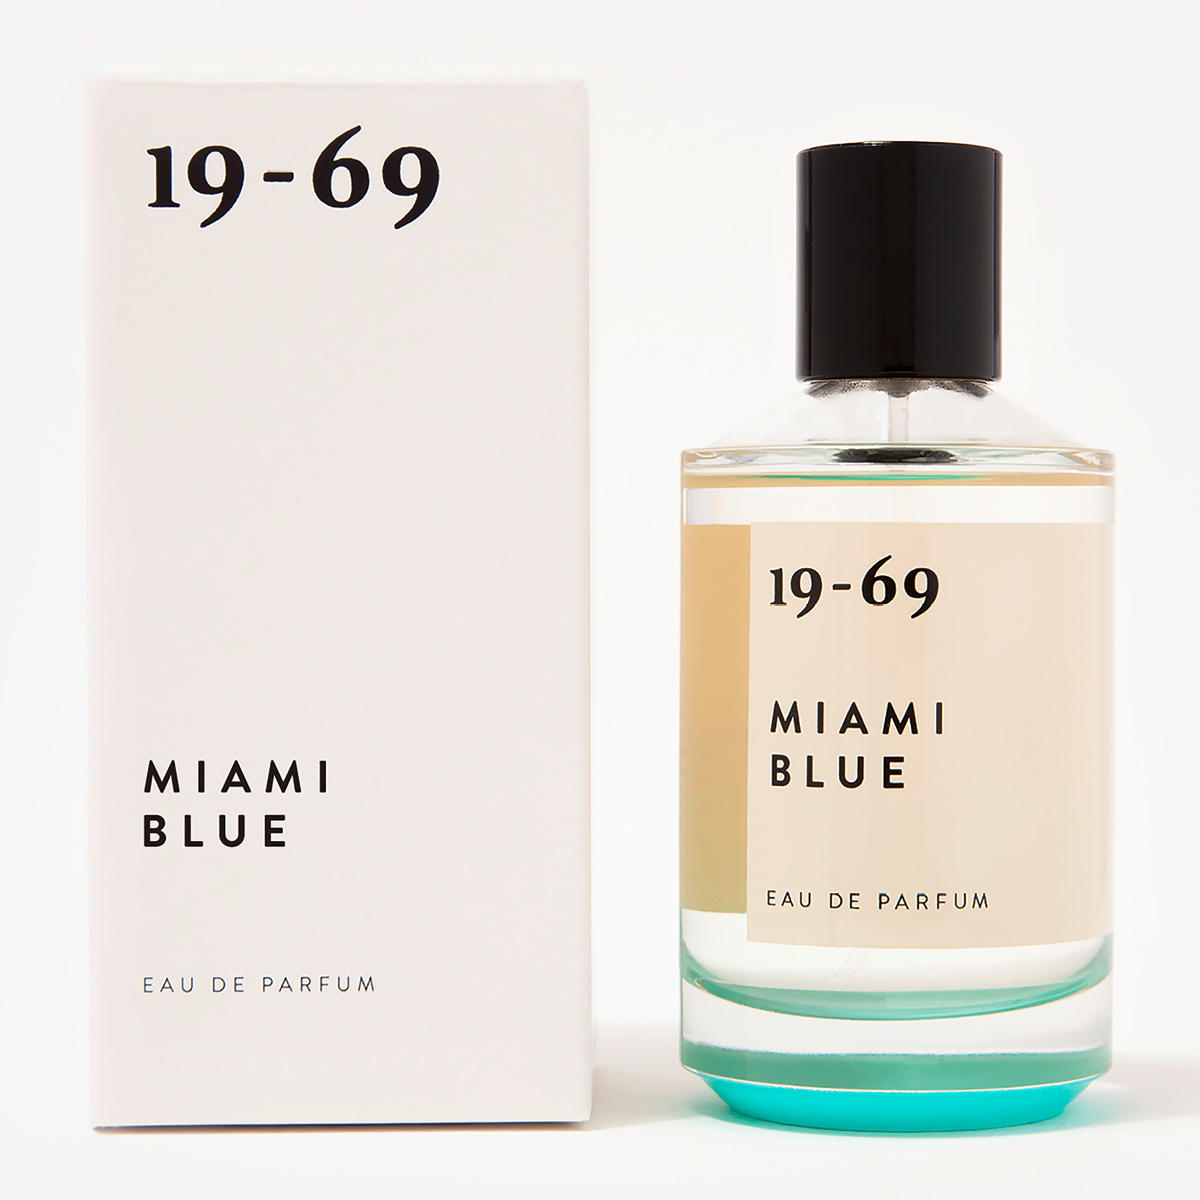 19-69 Miami Blue Eau de Parfum 100 ml - 2